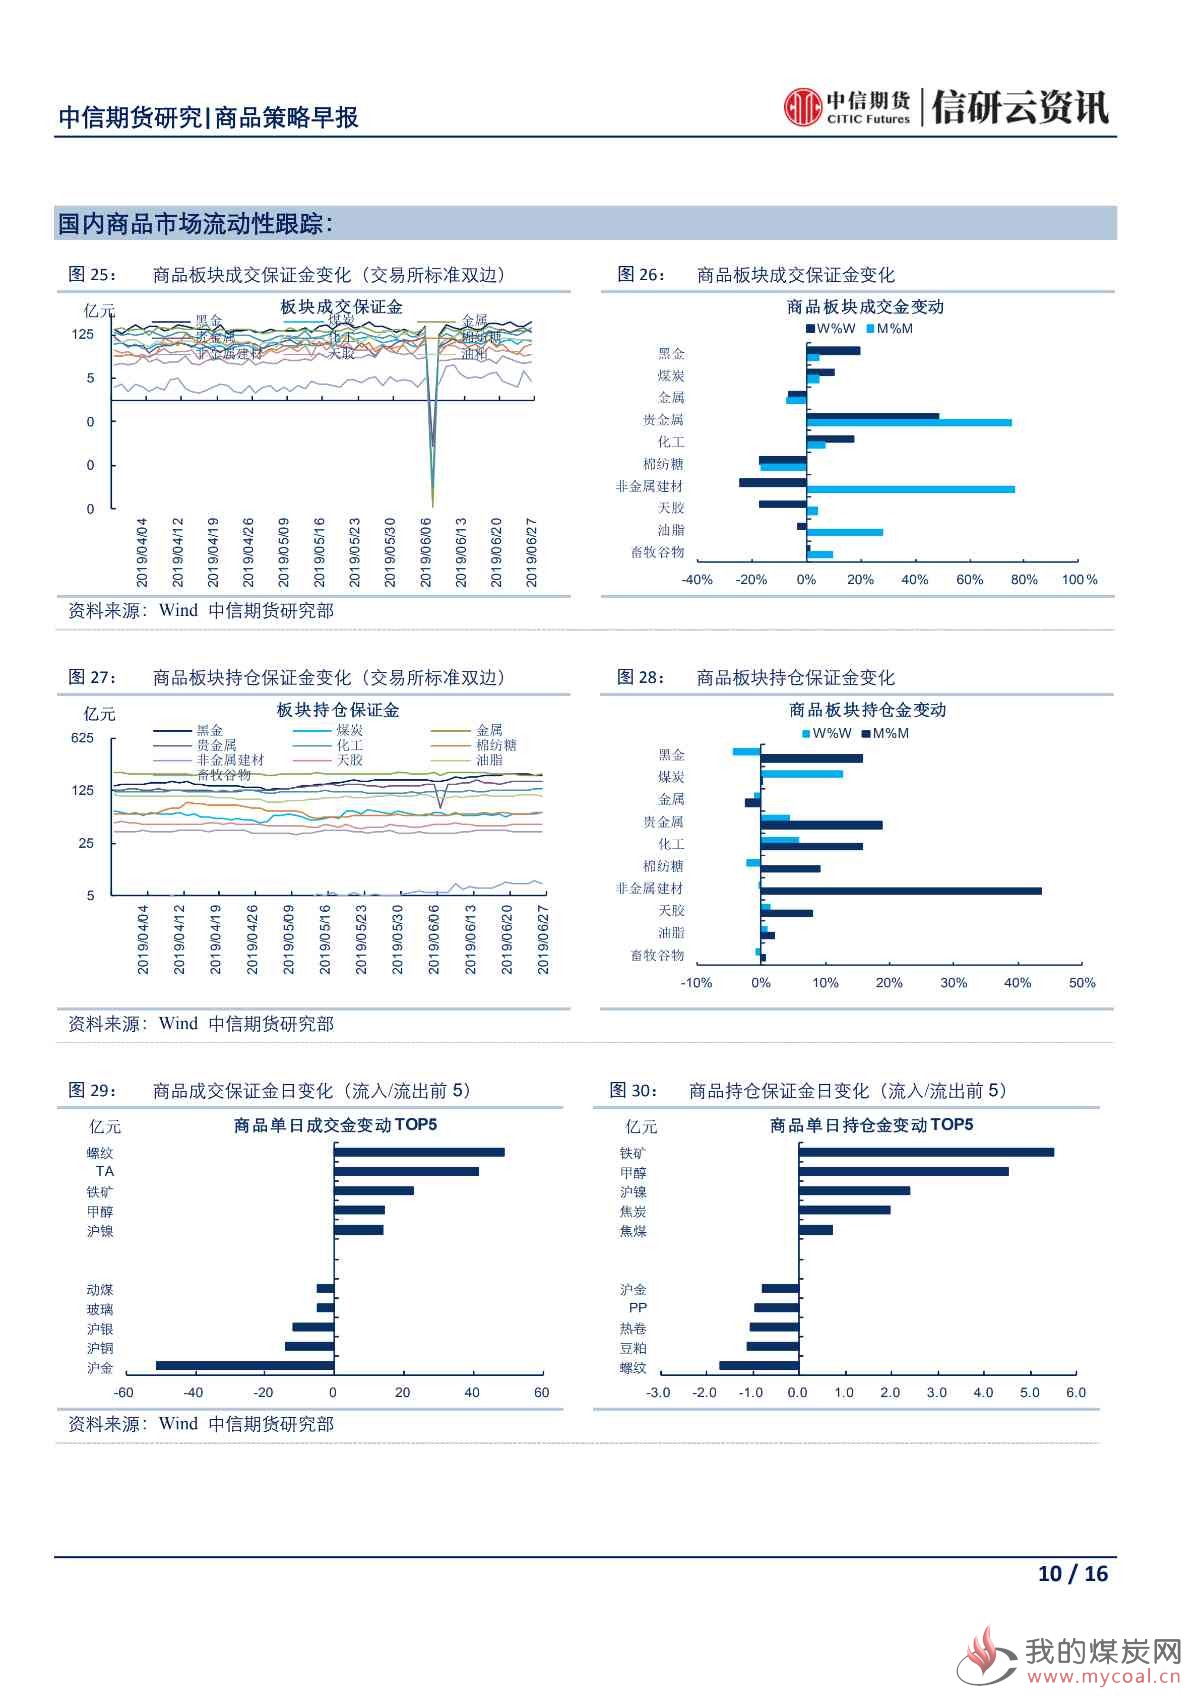 【中信期货宏观】央行再次强调稳健货币政策 市场密切关注日本G20峰会——日报20190628_09